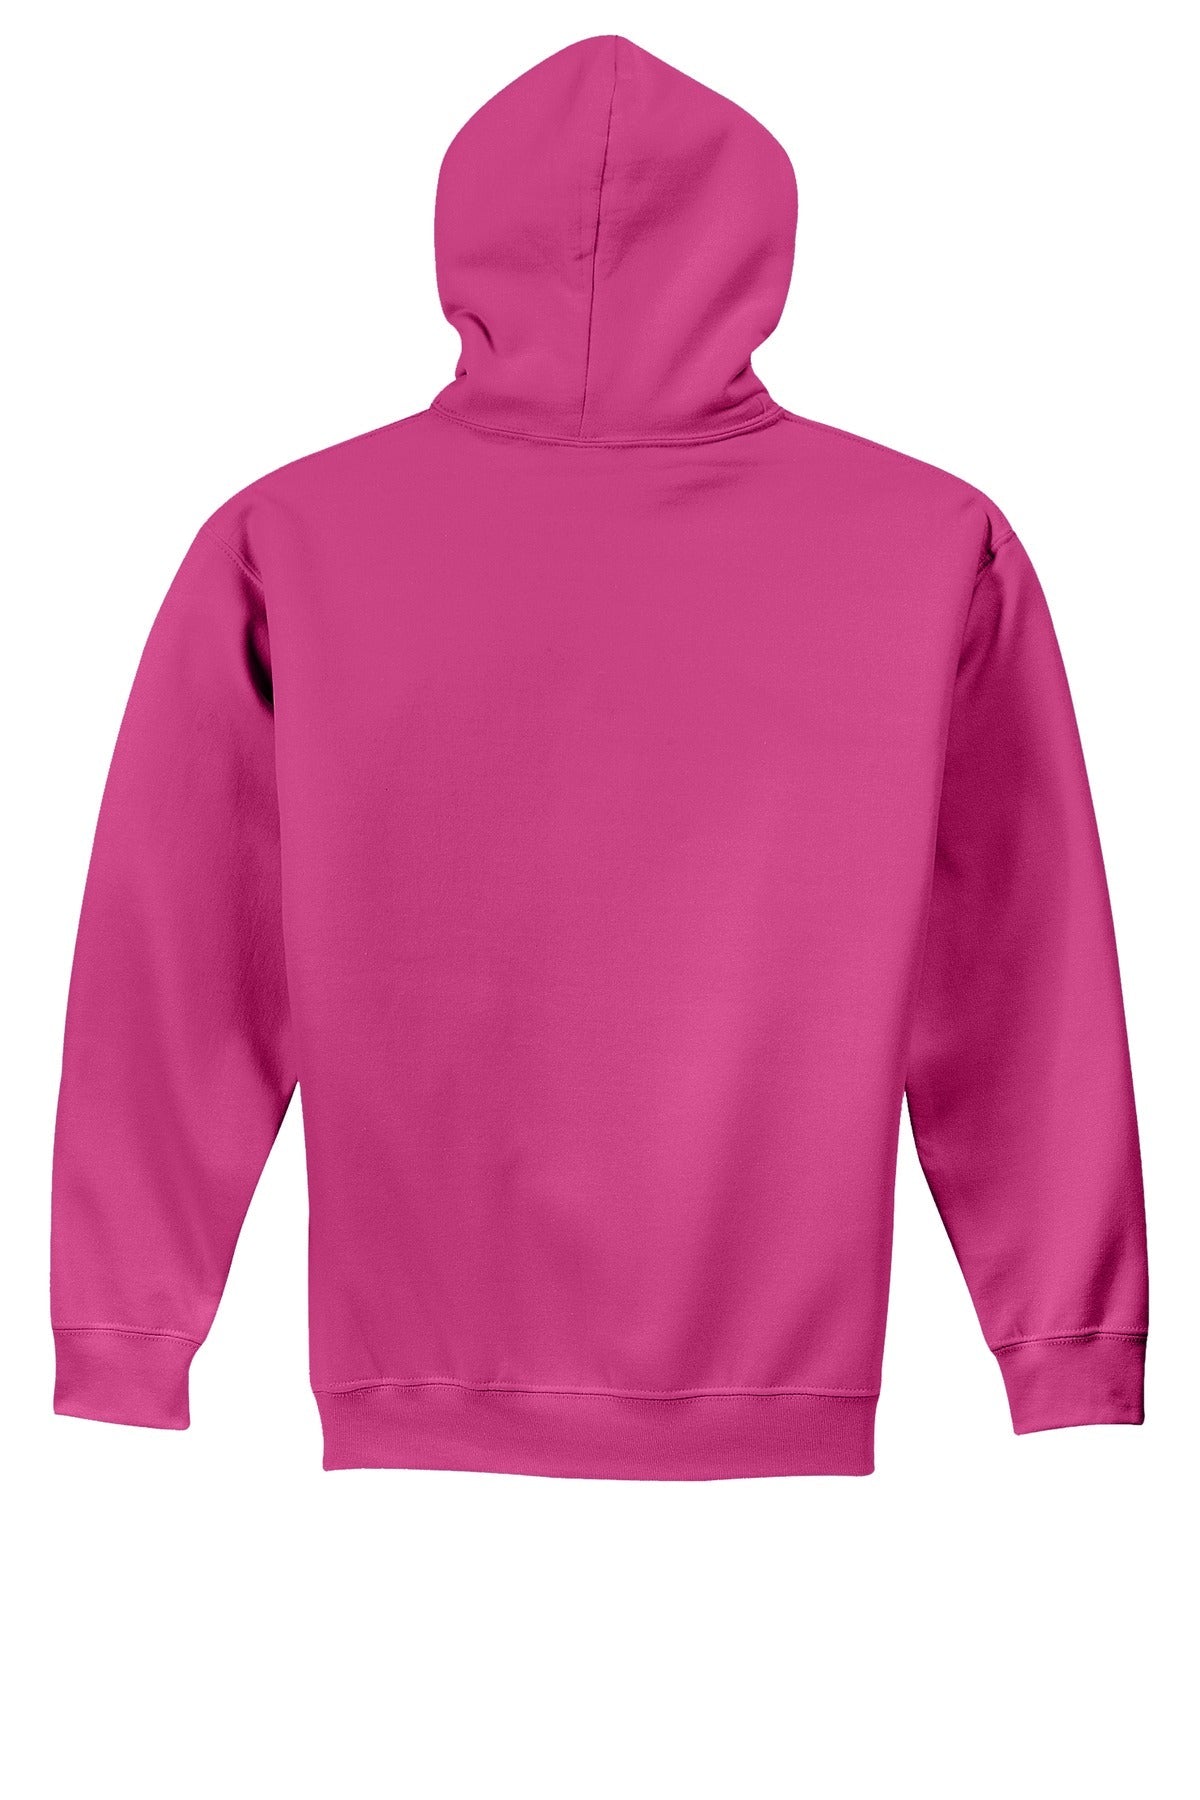 Gildan® - Youth Heavy Blend™ Hooded Sweatshirt. 18500B [Heliconia] - DFW Impression